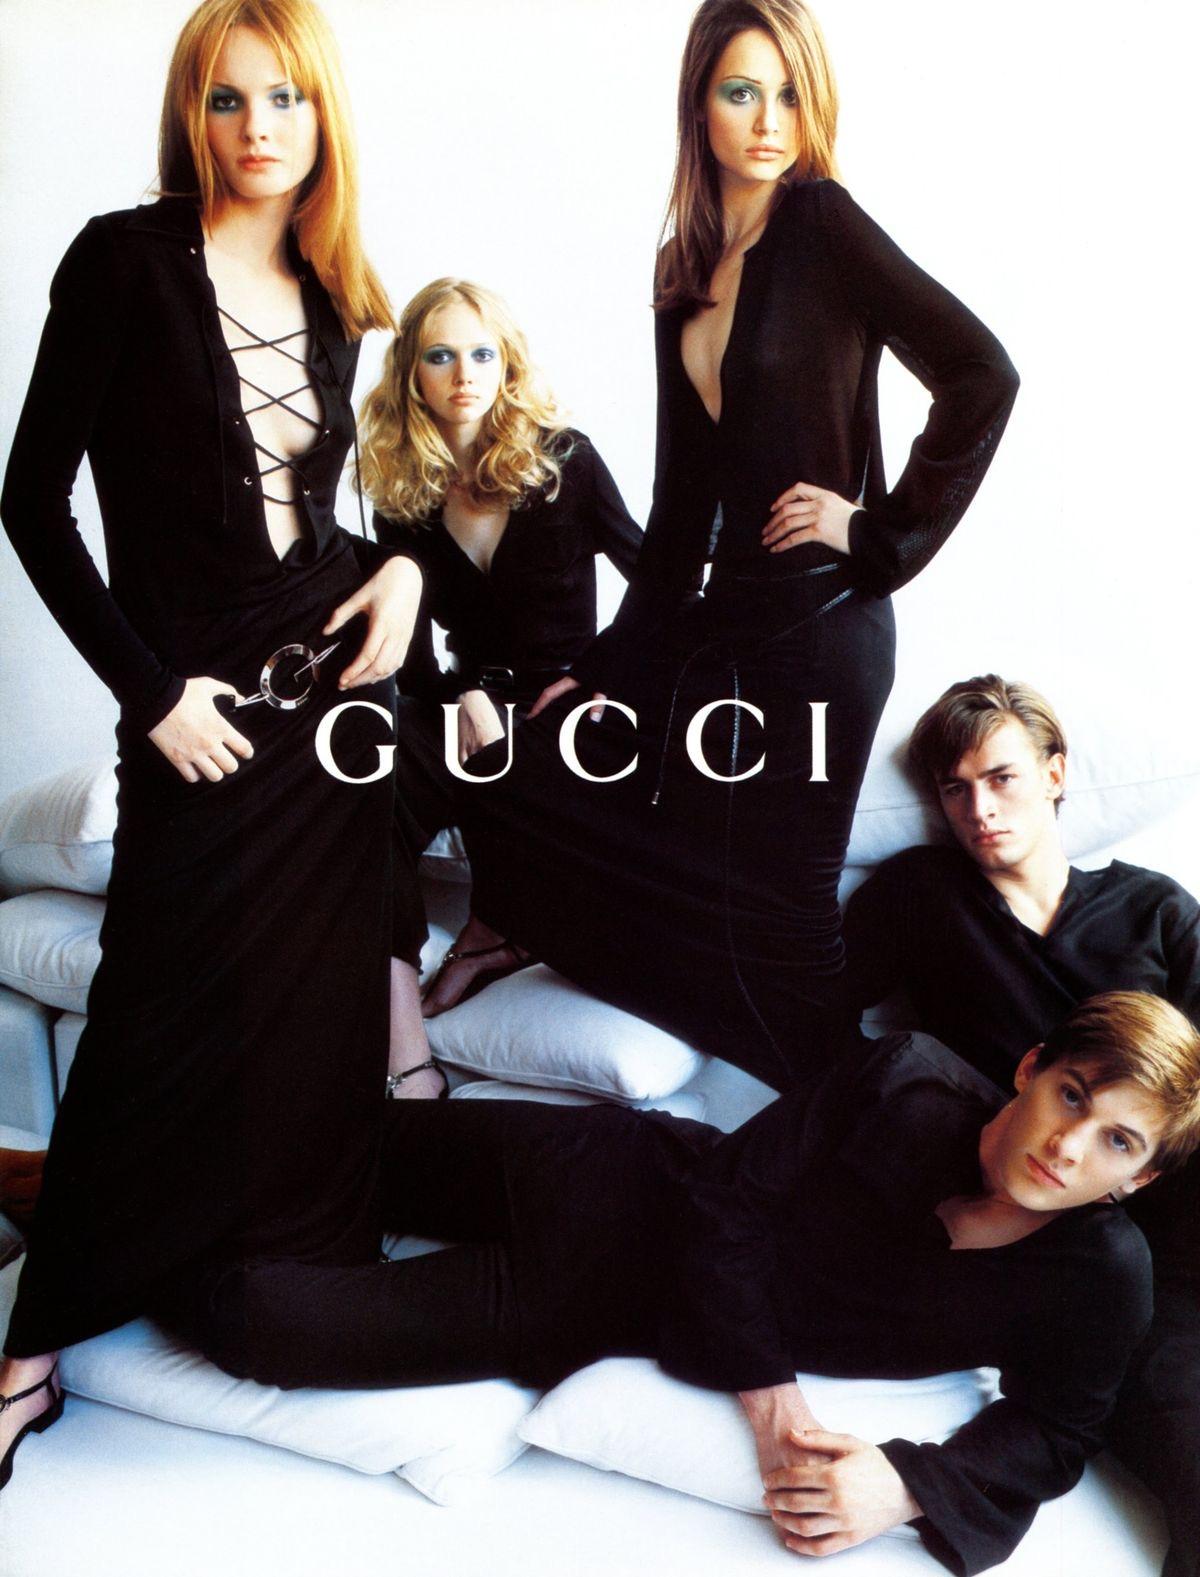 Dieser kultige Gucci-Gürtel, entworfen von Tom Ford, ist ein herausragendes Stück aus der Frühjahr/Sommer-Kollektion 1996. Mit einem schwarzen Lederarmband und einer großen runden silbernen 'G'-Schließe ausgestattet, feierte sie ihr Debüt auf dem